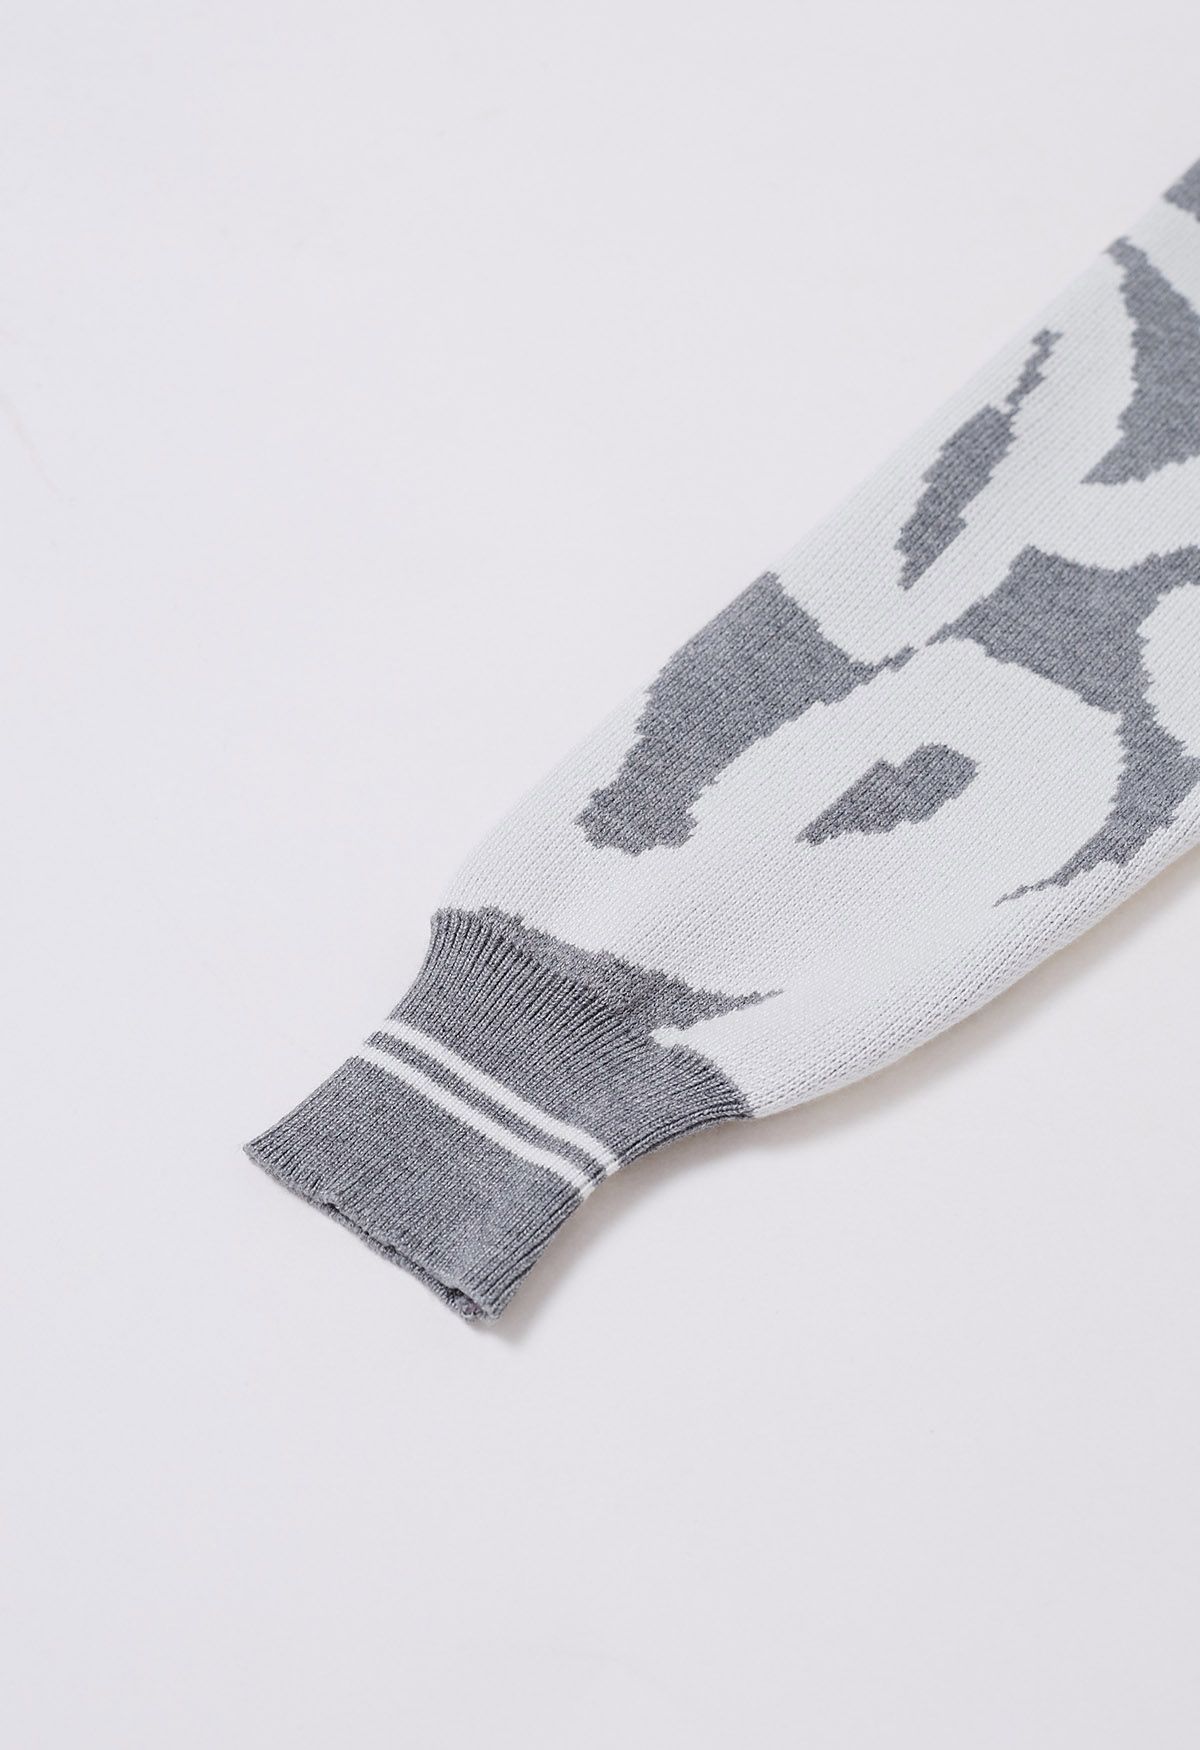 Ensemble cardigan et pantalon en tricot boutonné à imprimé abstrait en gris